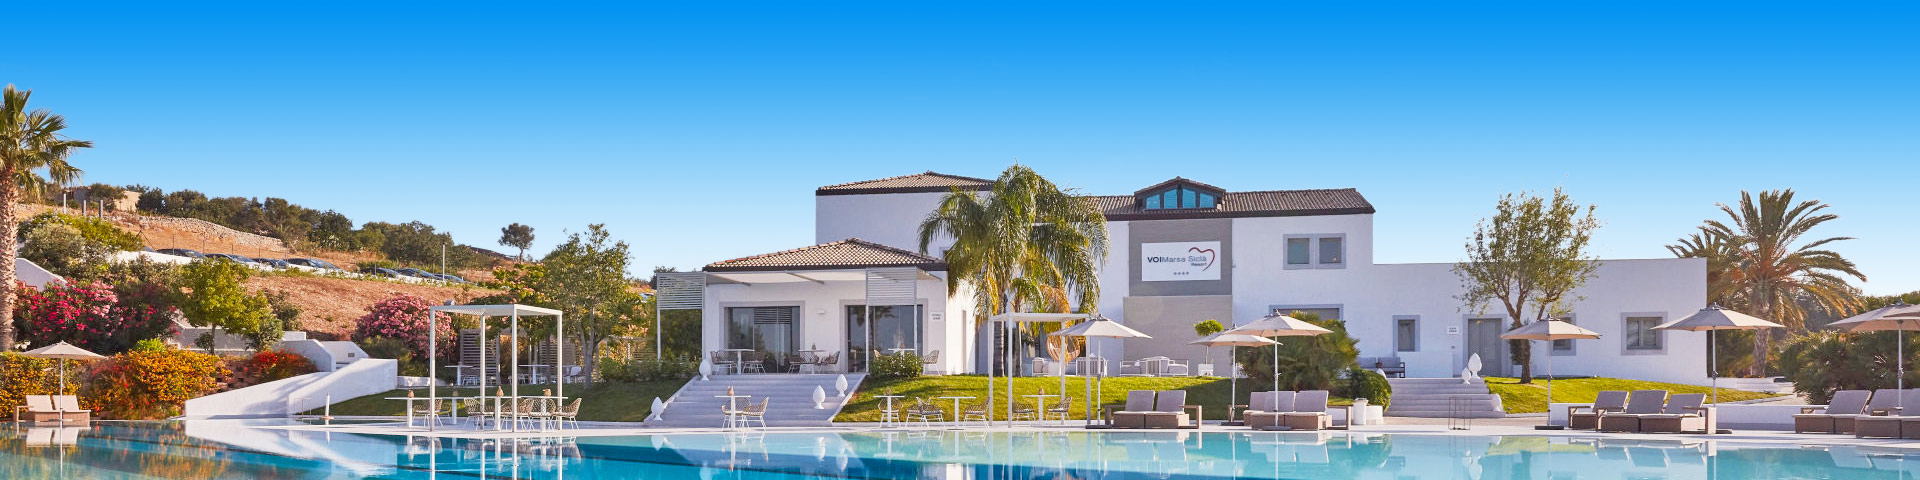 Wit hotel met zwembad en palmbomen in Italië